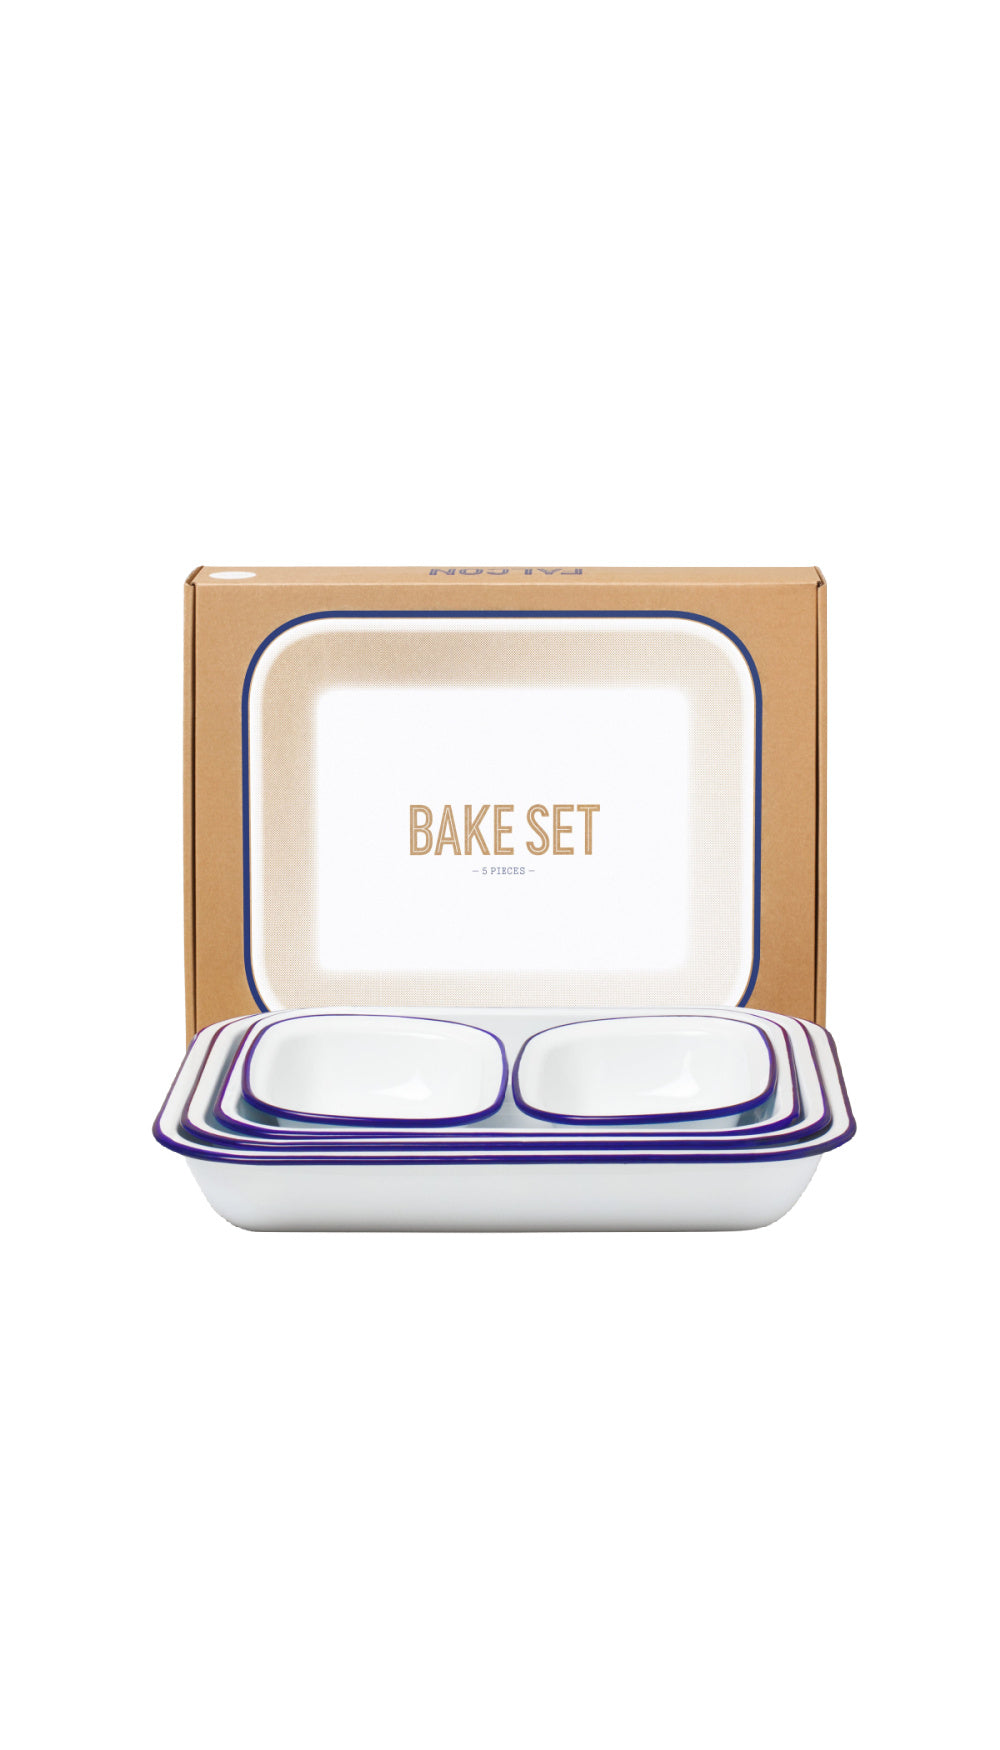 Bake Set / FALCON WARE